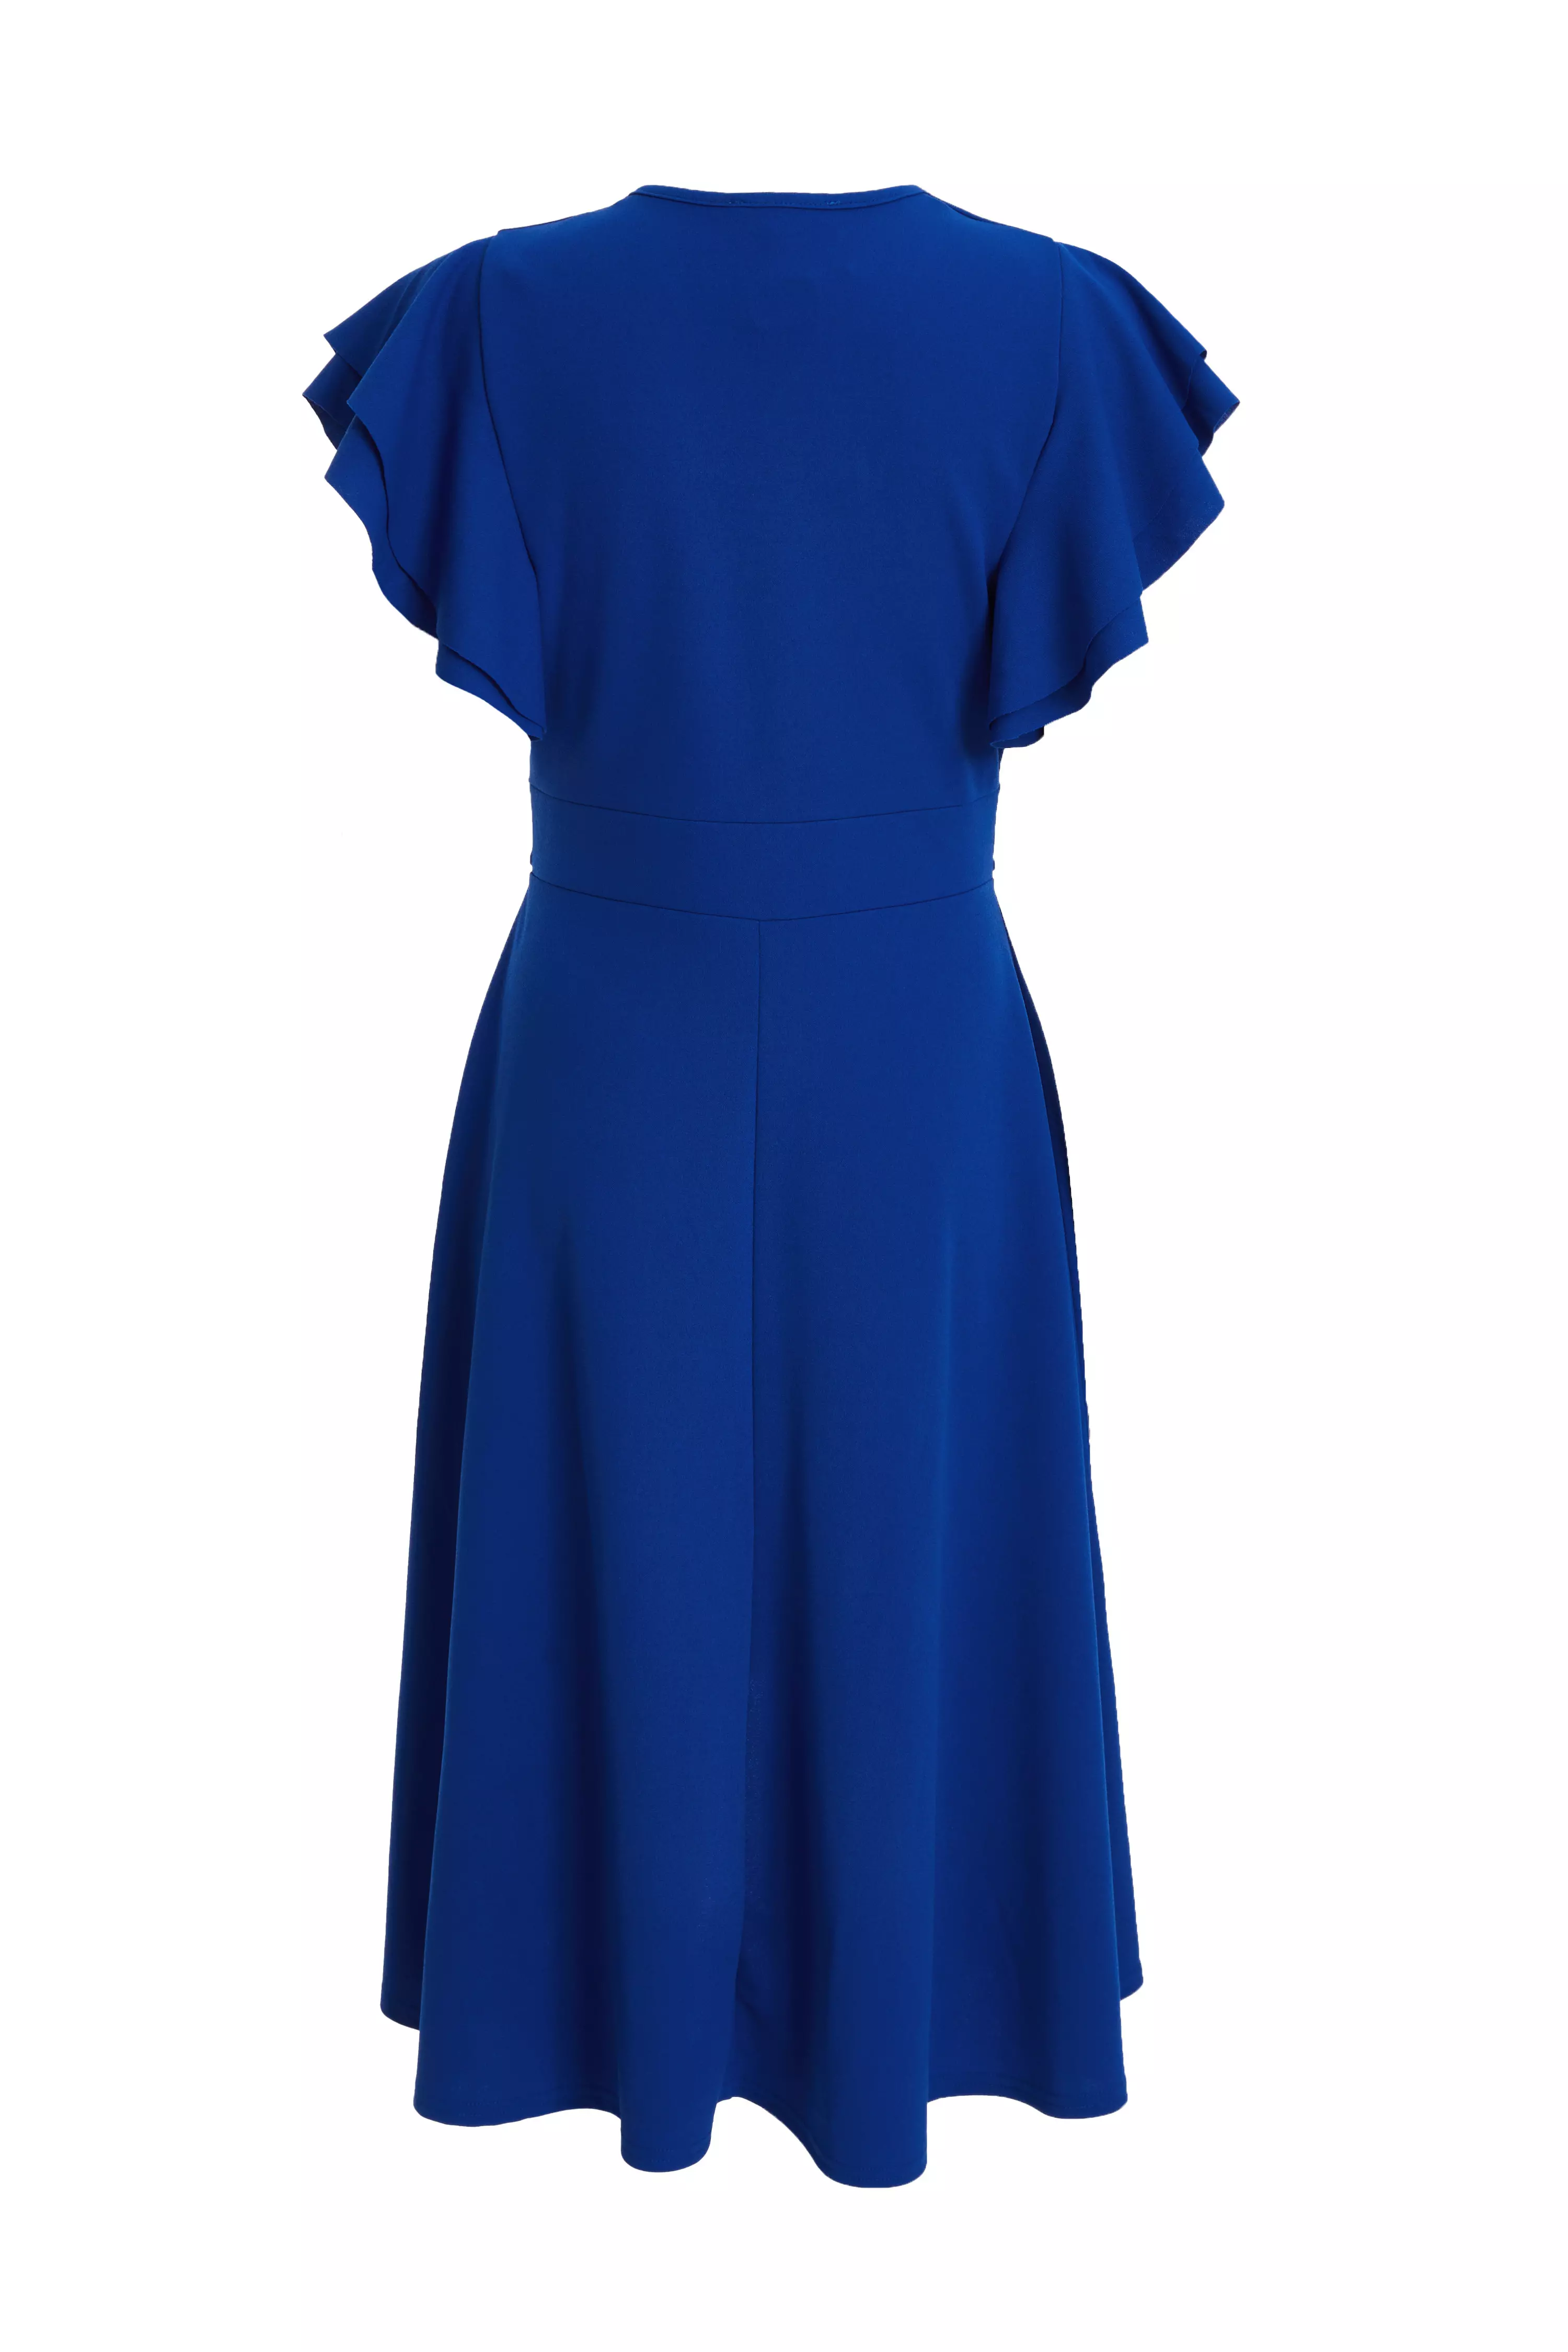 Petite Royal Blue Scuba Crepe Wrap Dress - QUIZ Clothing